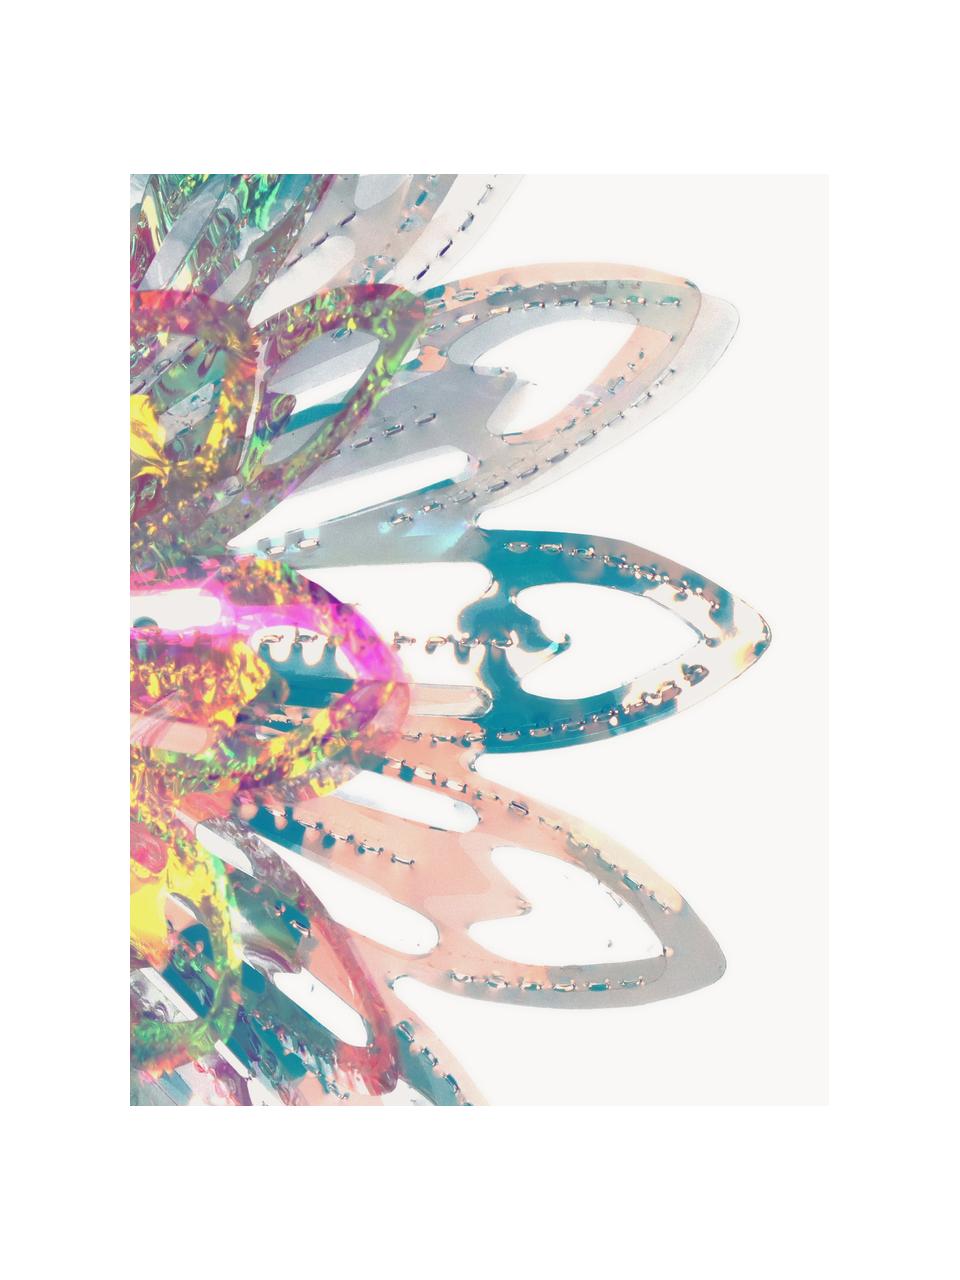 Adorno navideño Iridescent, Plástico, Cromo, transparente, iridiscente, Ø 23 cm